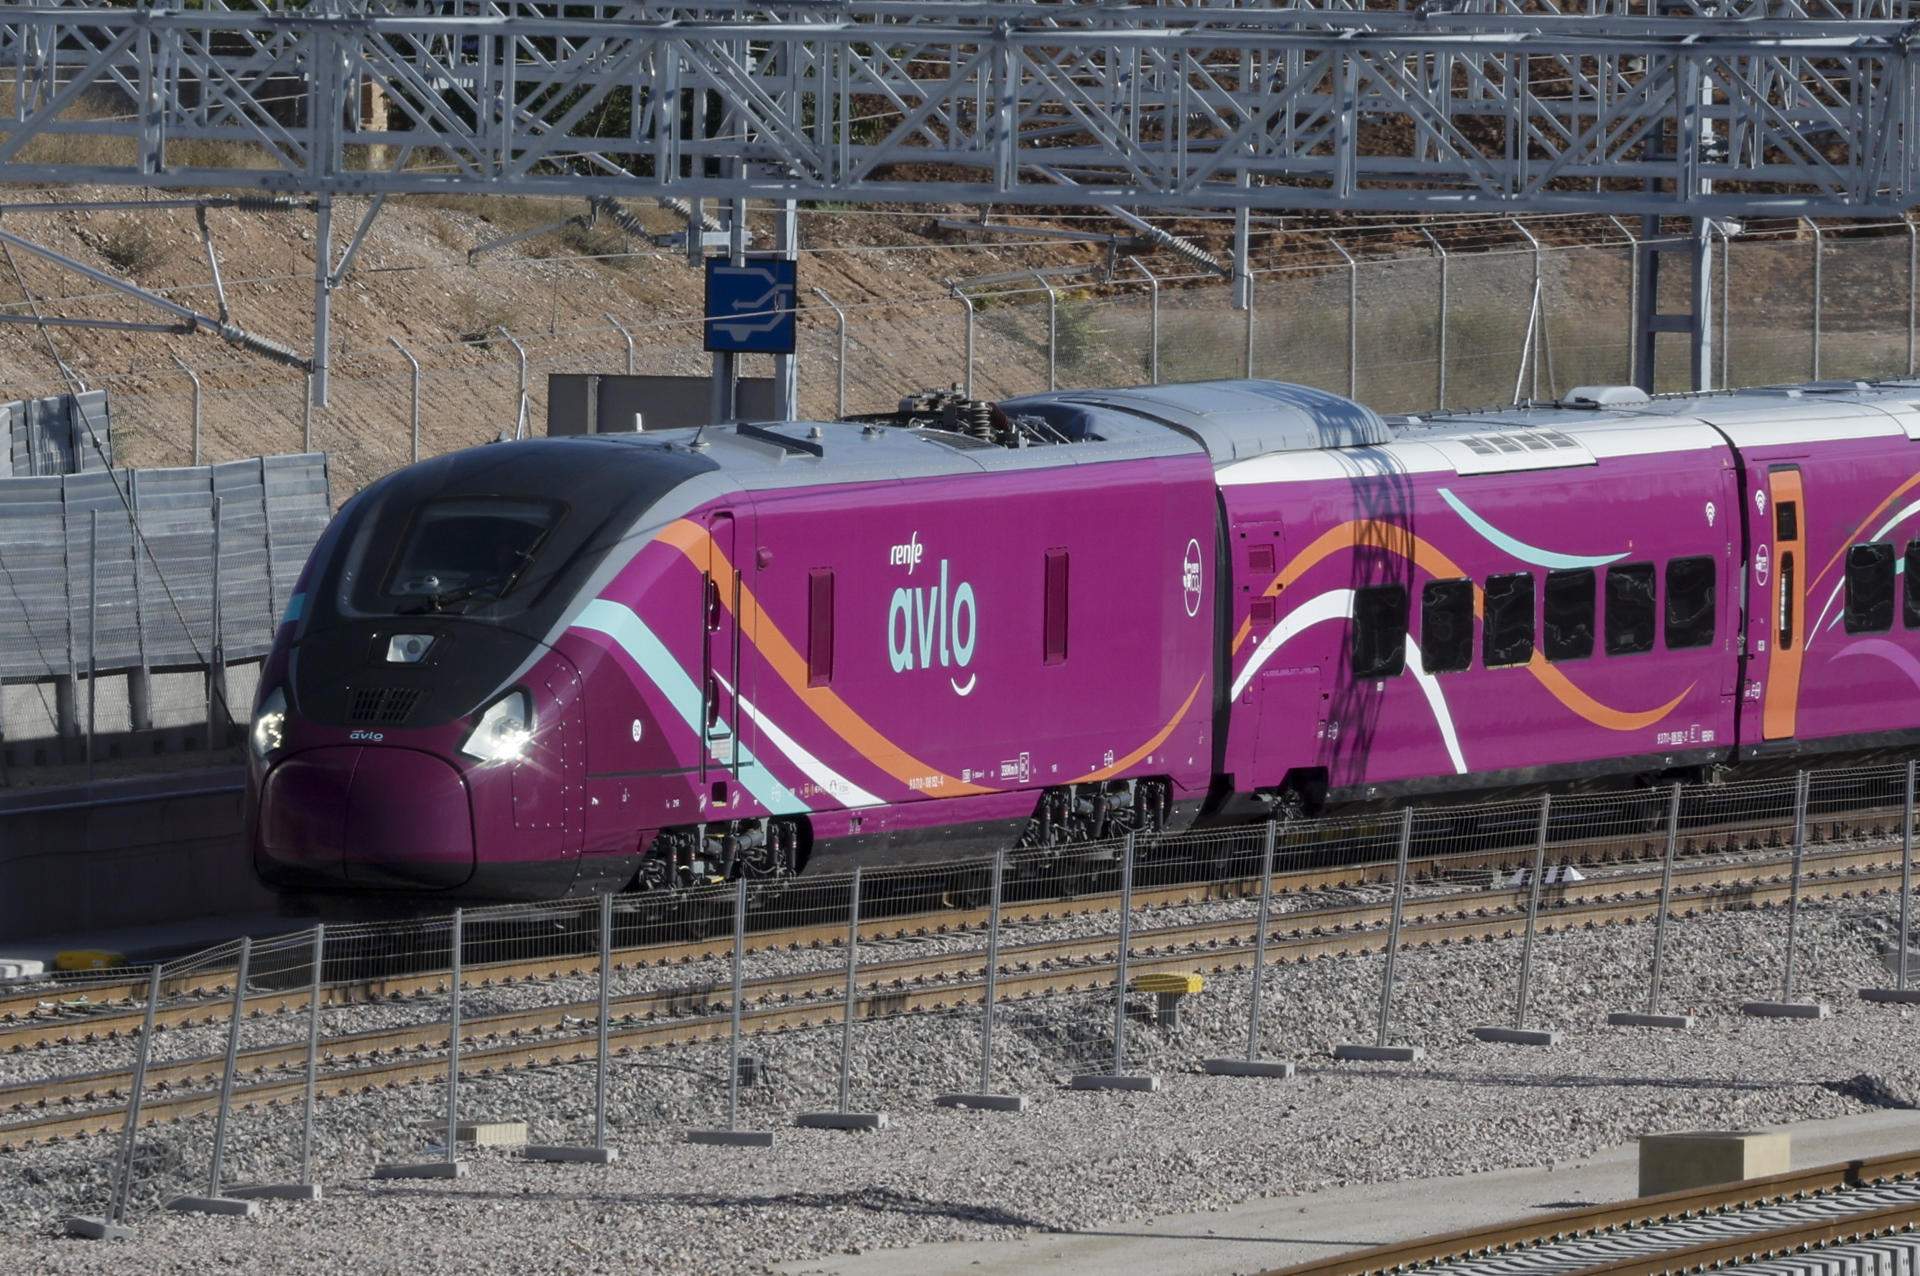 Més actes vandàlics als trens a Catalunya: apedreguen un nou Avlo de Renfe a l'estació del Camp de Tarragona